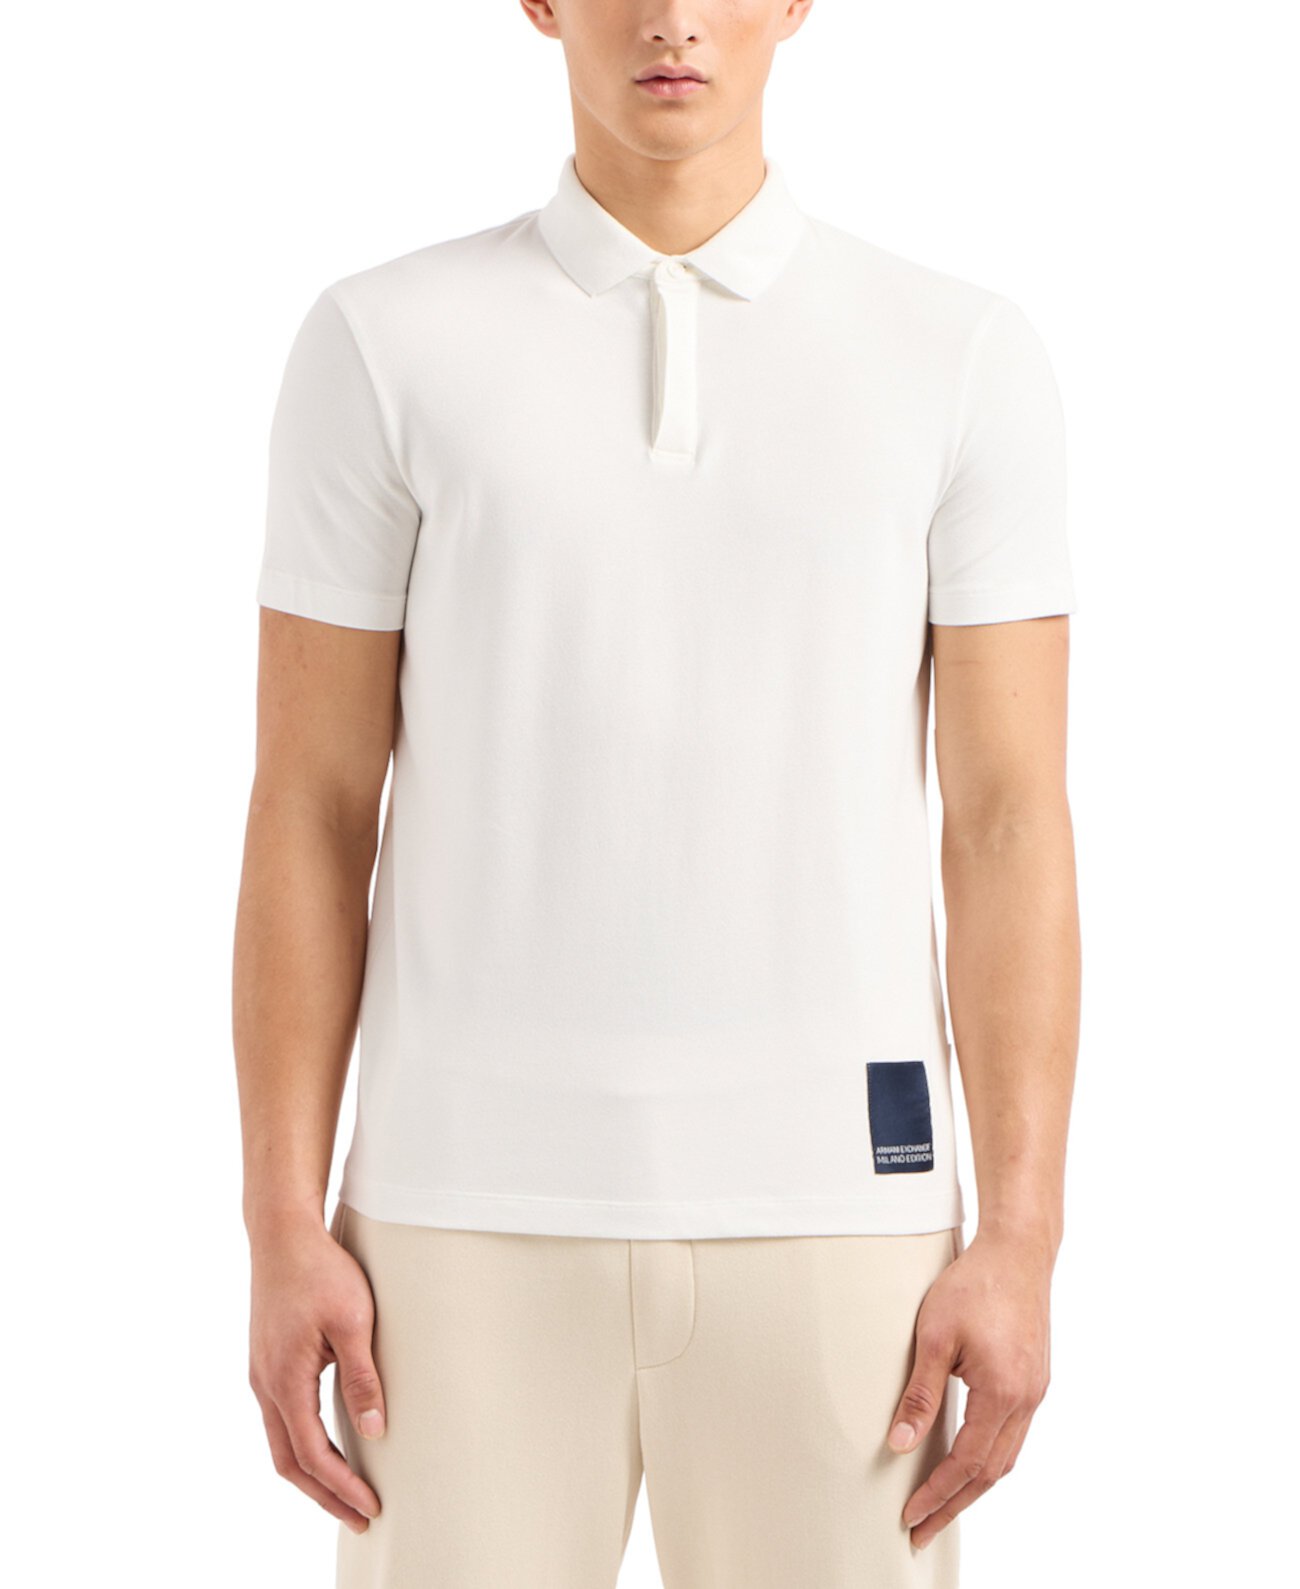 Мужская рубашка-поло стандартного кроя ограниченной серии Milano с нашивкой-логотипом Armani